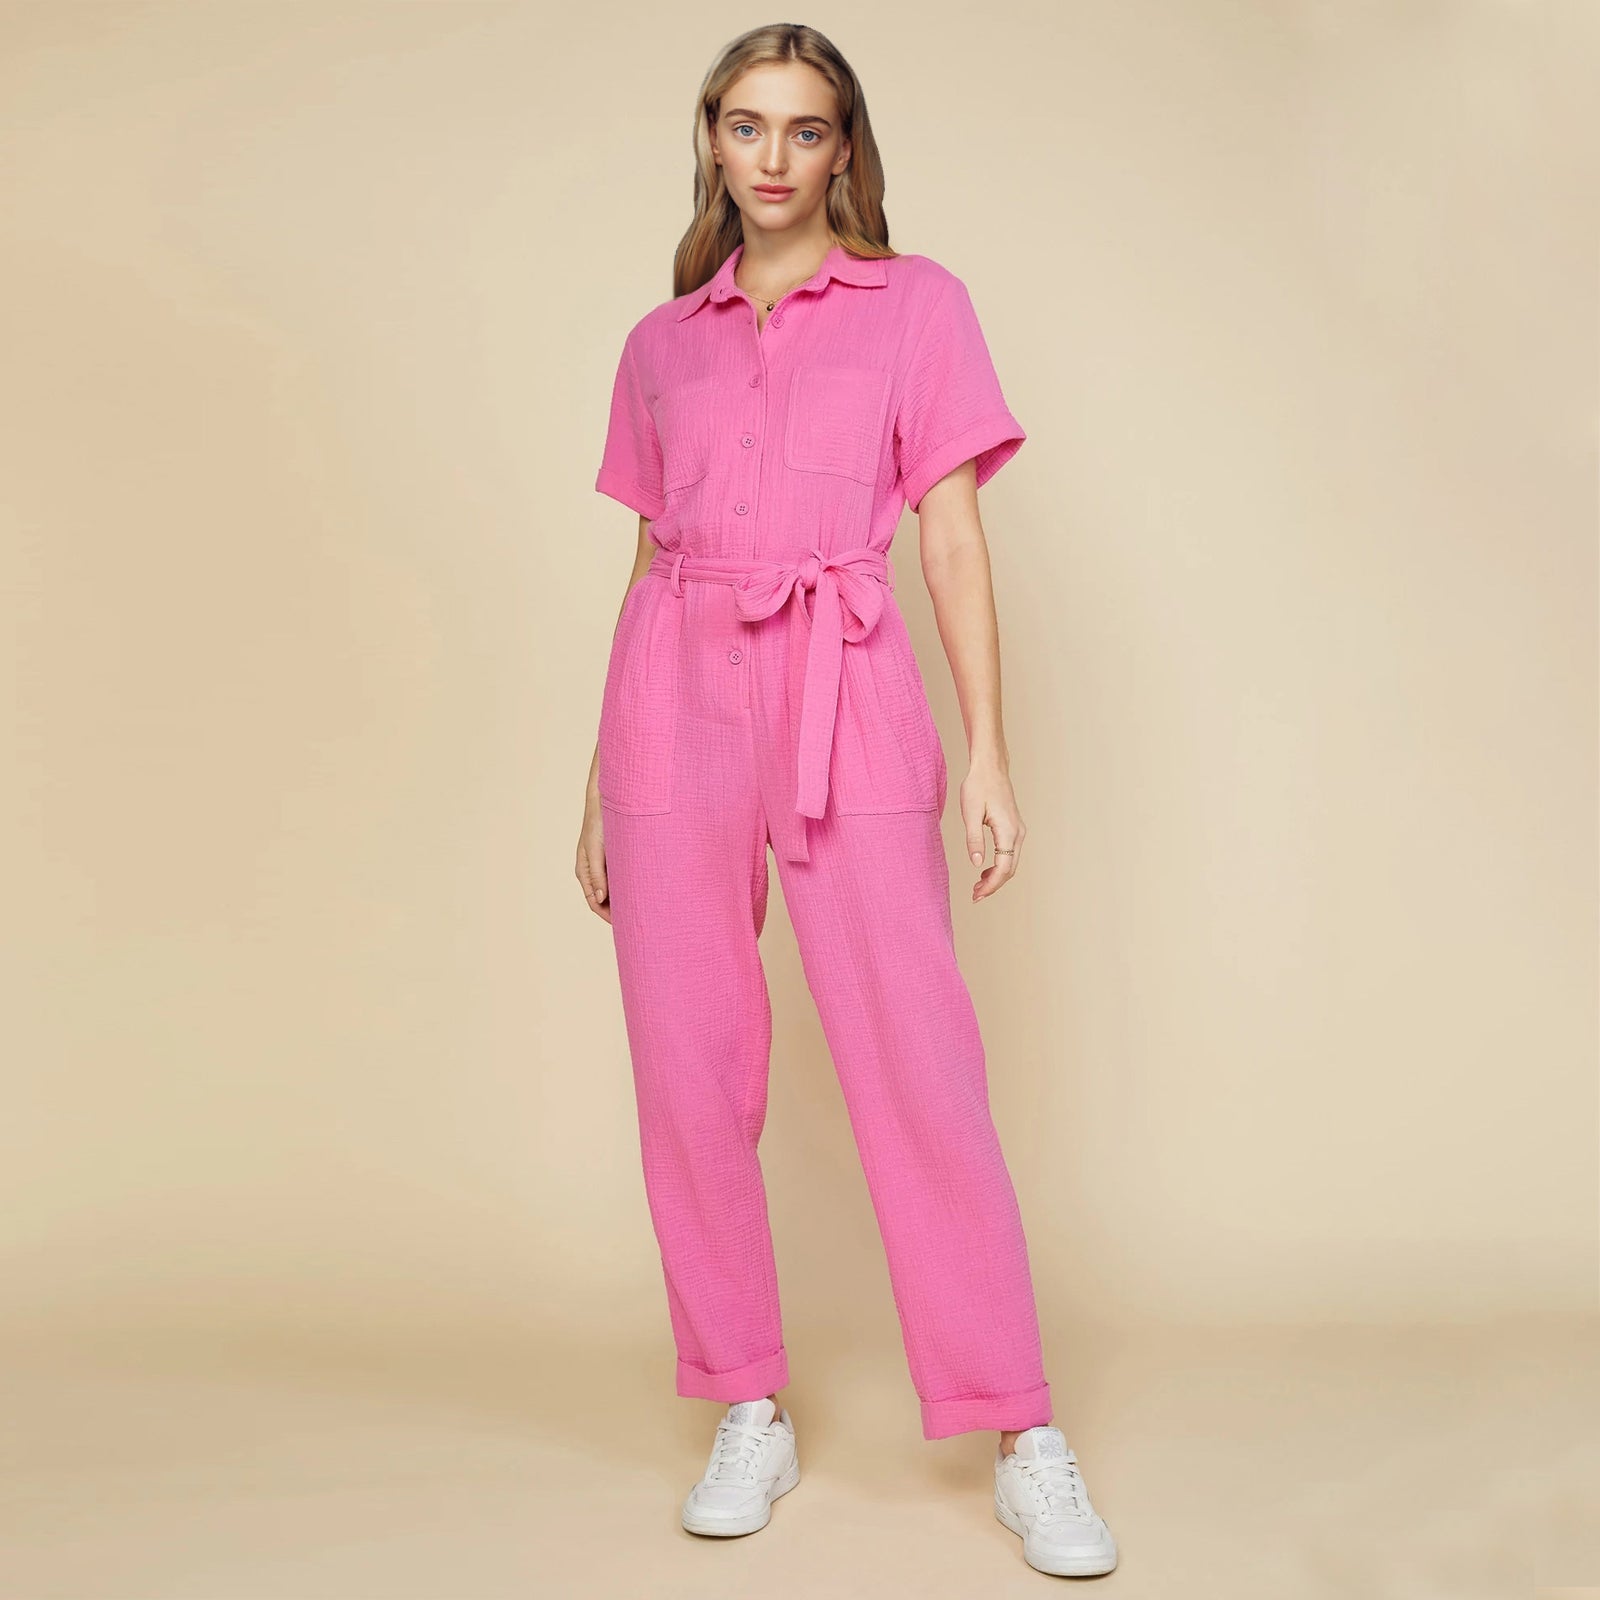 Rudy Cut Out Jumpsuit (Coral Pink) – Nova Lee Boutique